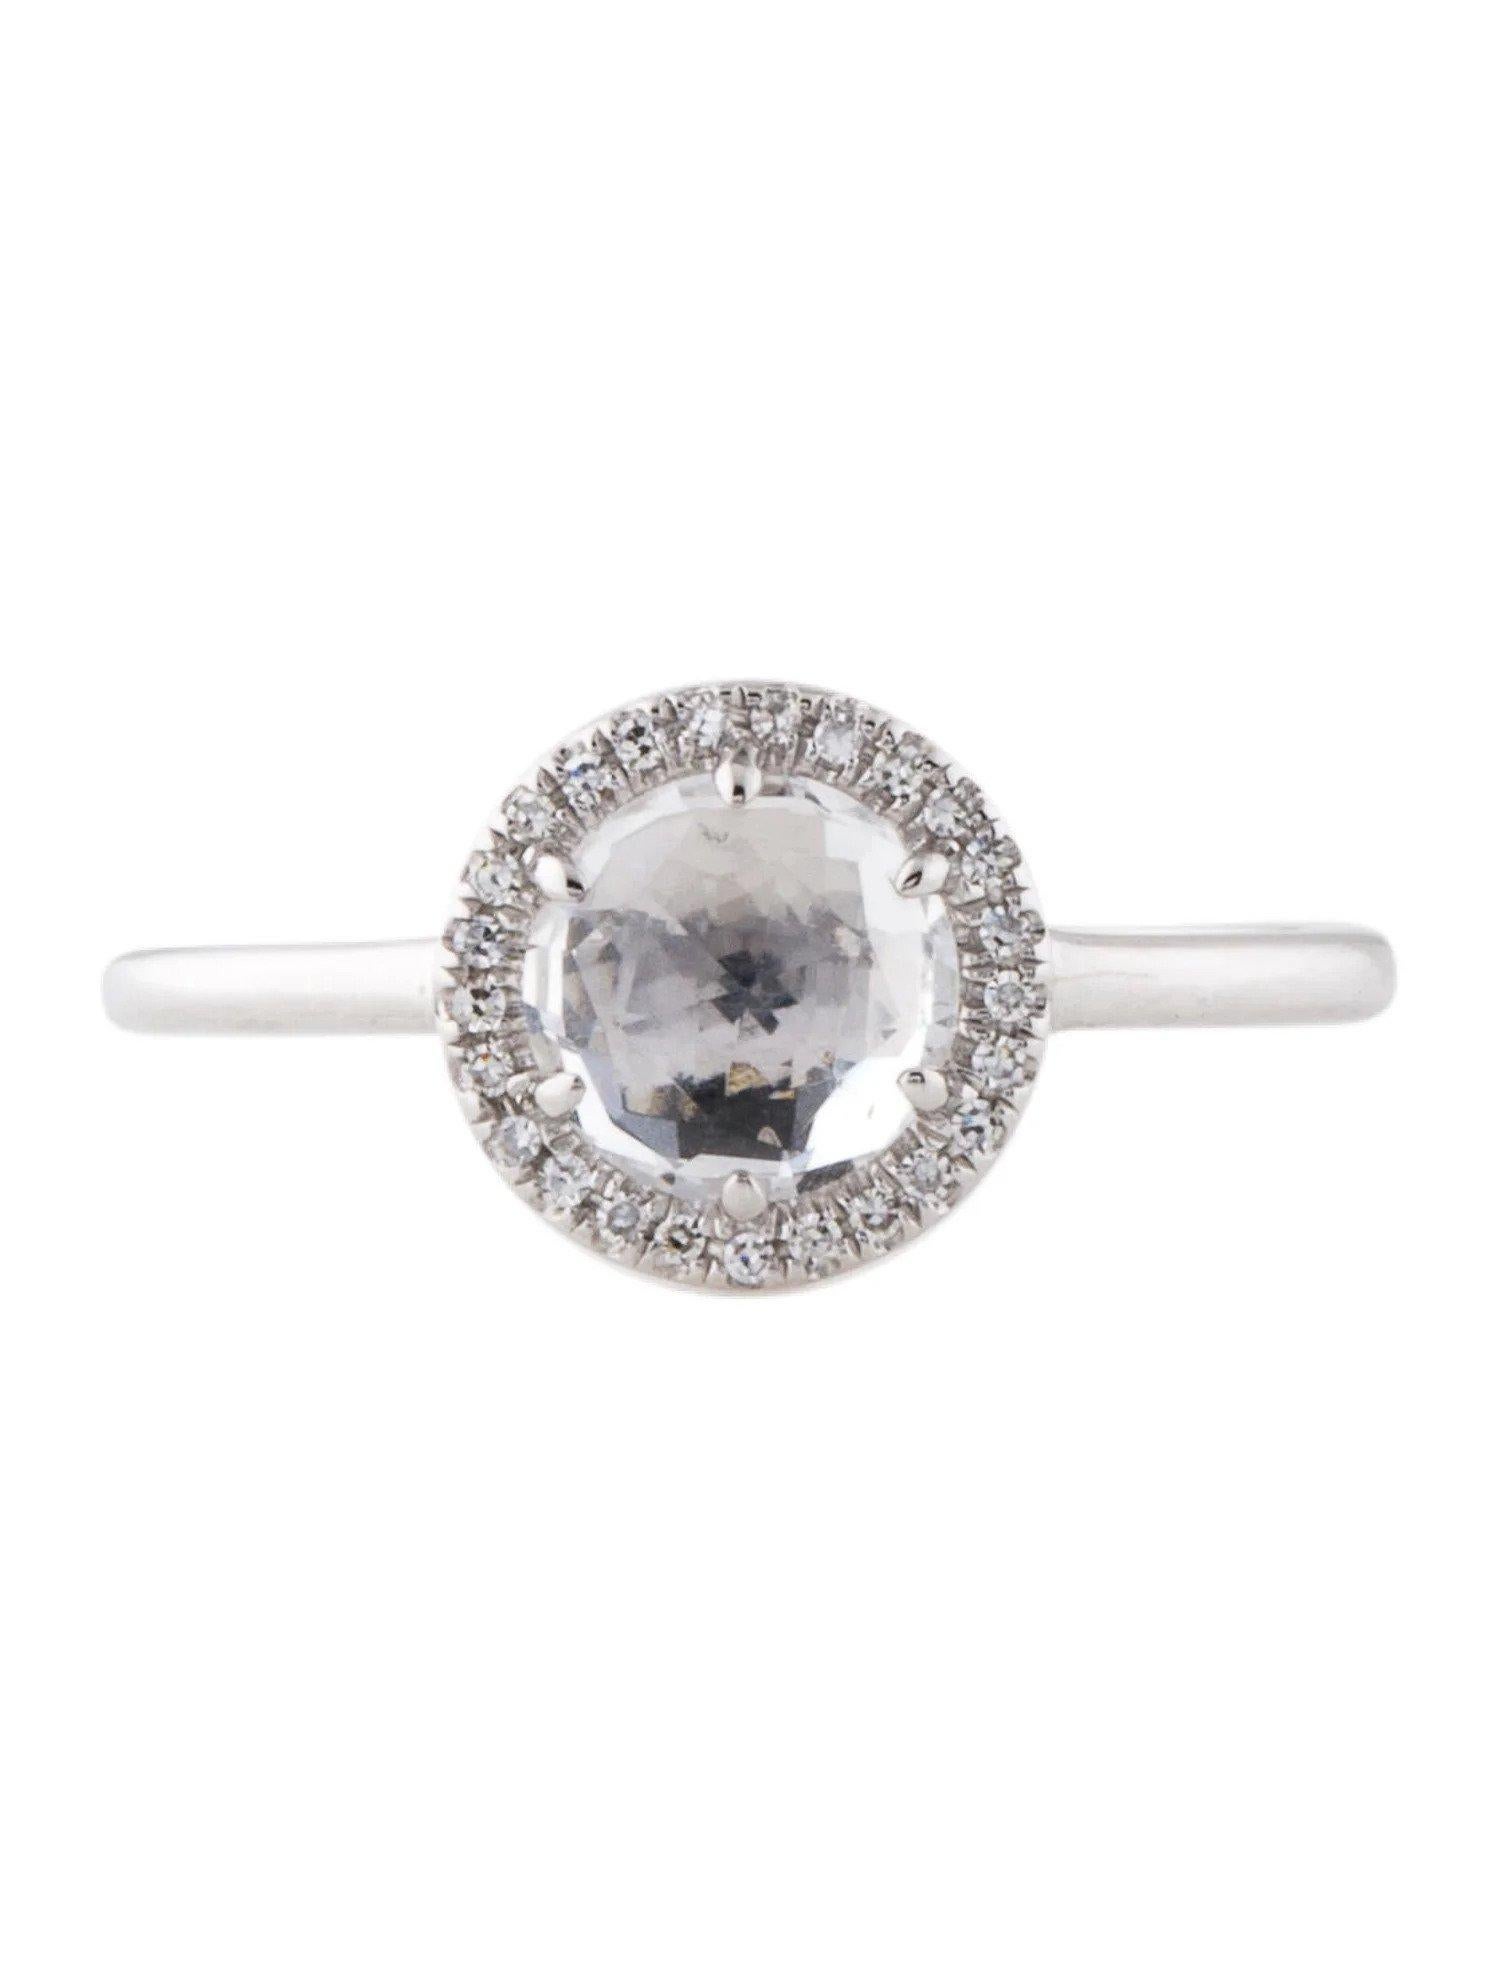 Dieser Ring aus weißem Topas und Diamanten ist ein atemberaubendes und zeitloses Accessoire, das jedem Outfit einen Hauch von Glamour und Raffinesse verleihen kann. 

Dieser Ring besteht aus einem runden weißen Topas von 1,37 Karat mit einem